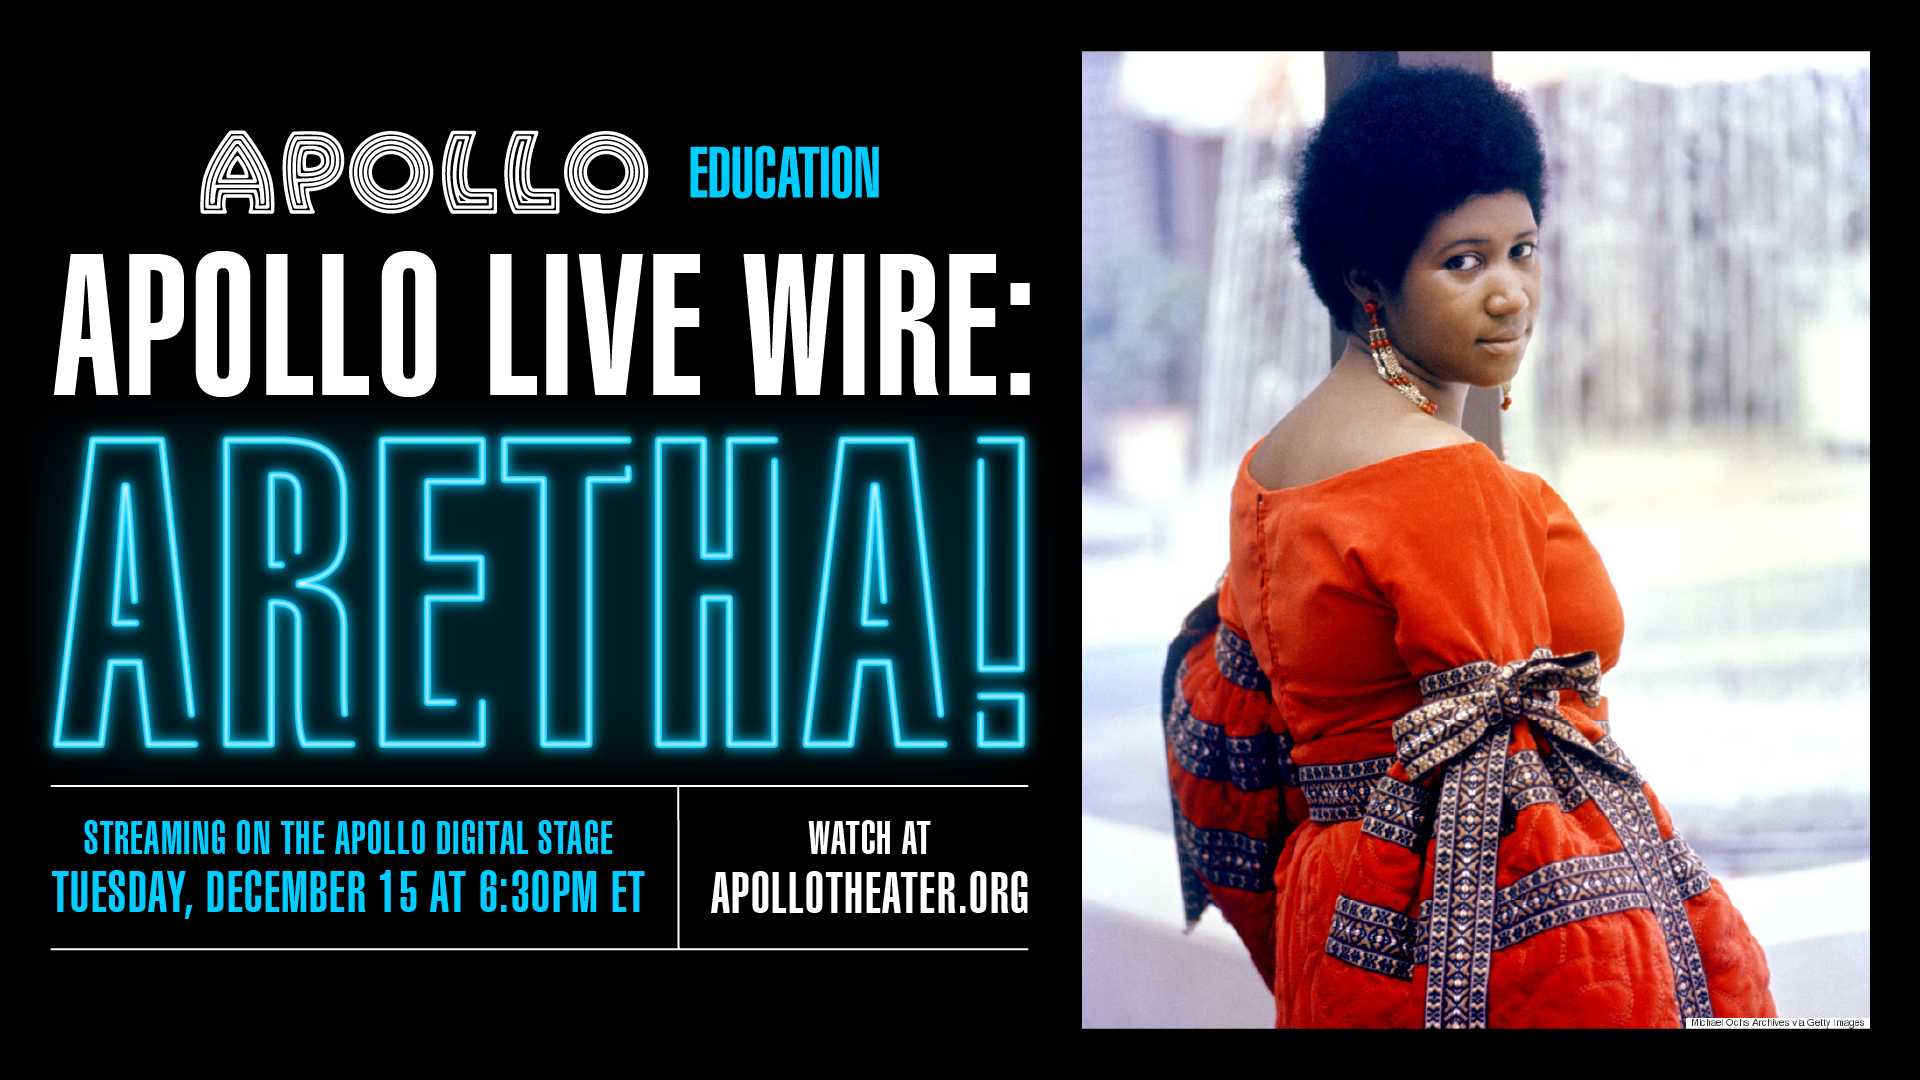 Apollo Live Wire: ARETHA!